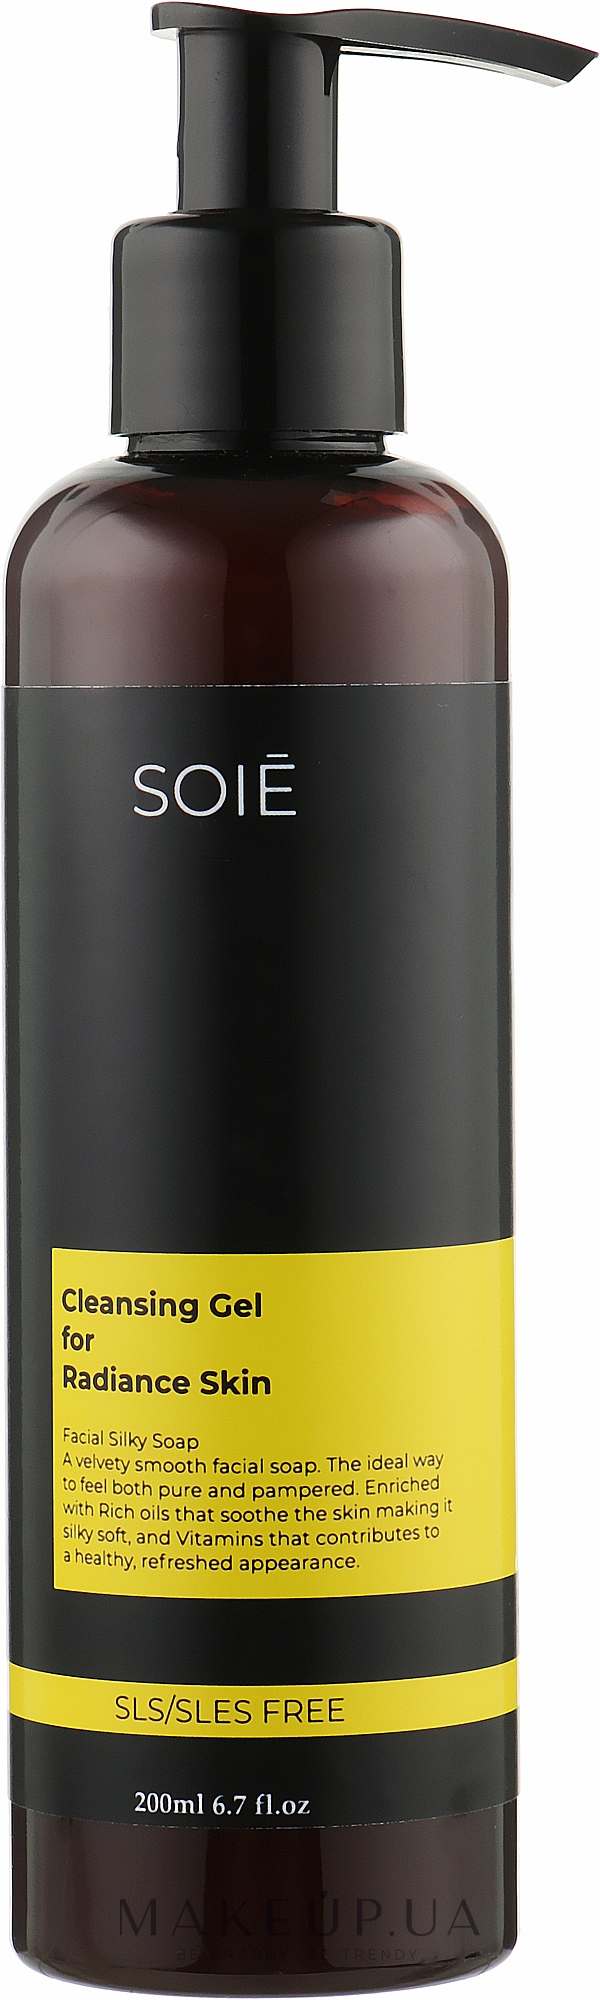 Гель для очистки и сияния кожи лица - Soie Cleansing Gel For Radiance Skin — фото 200ml